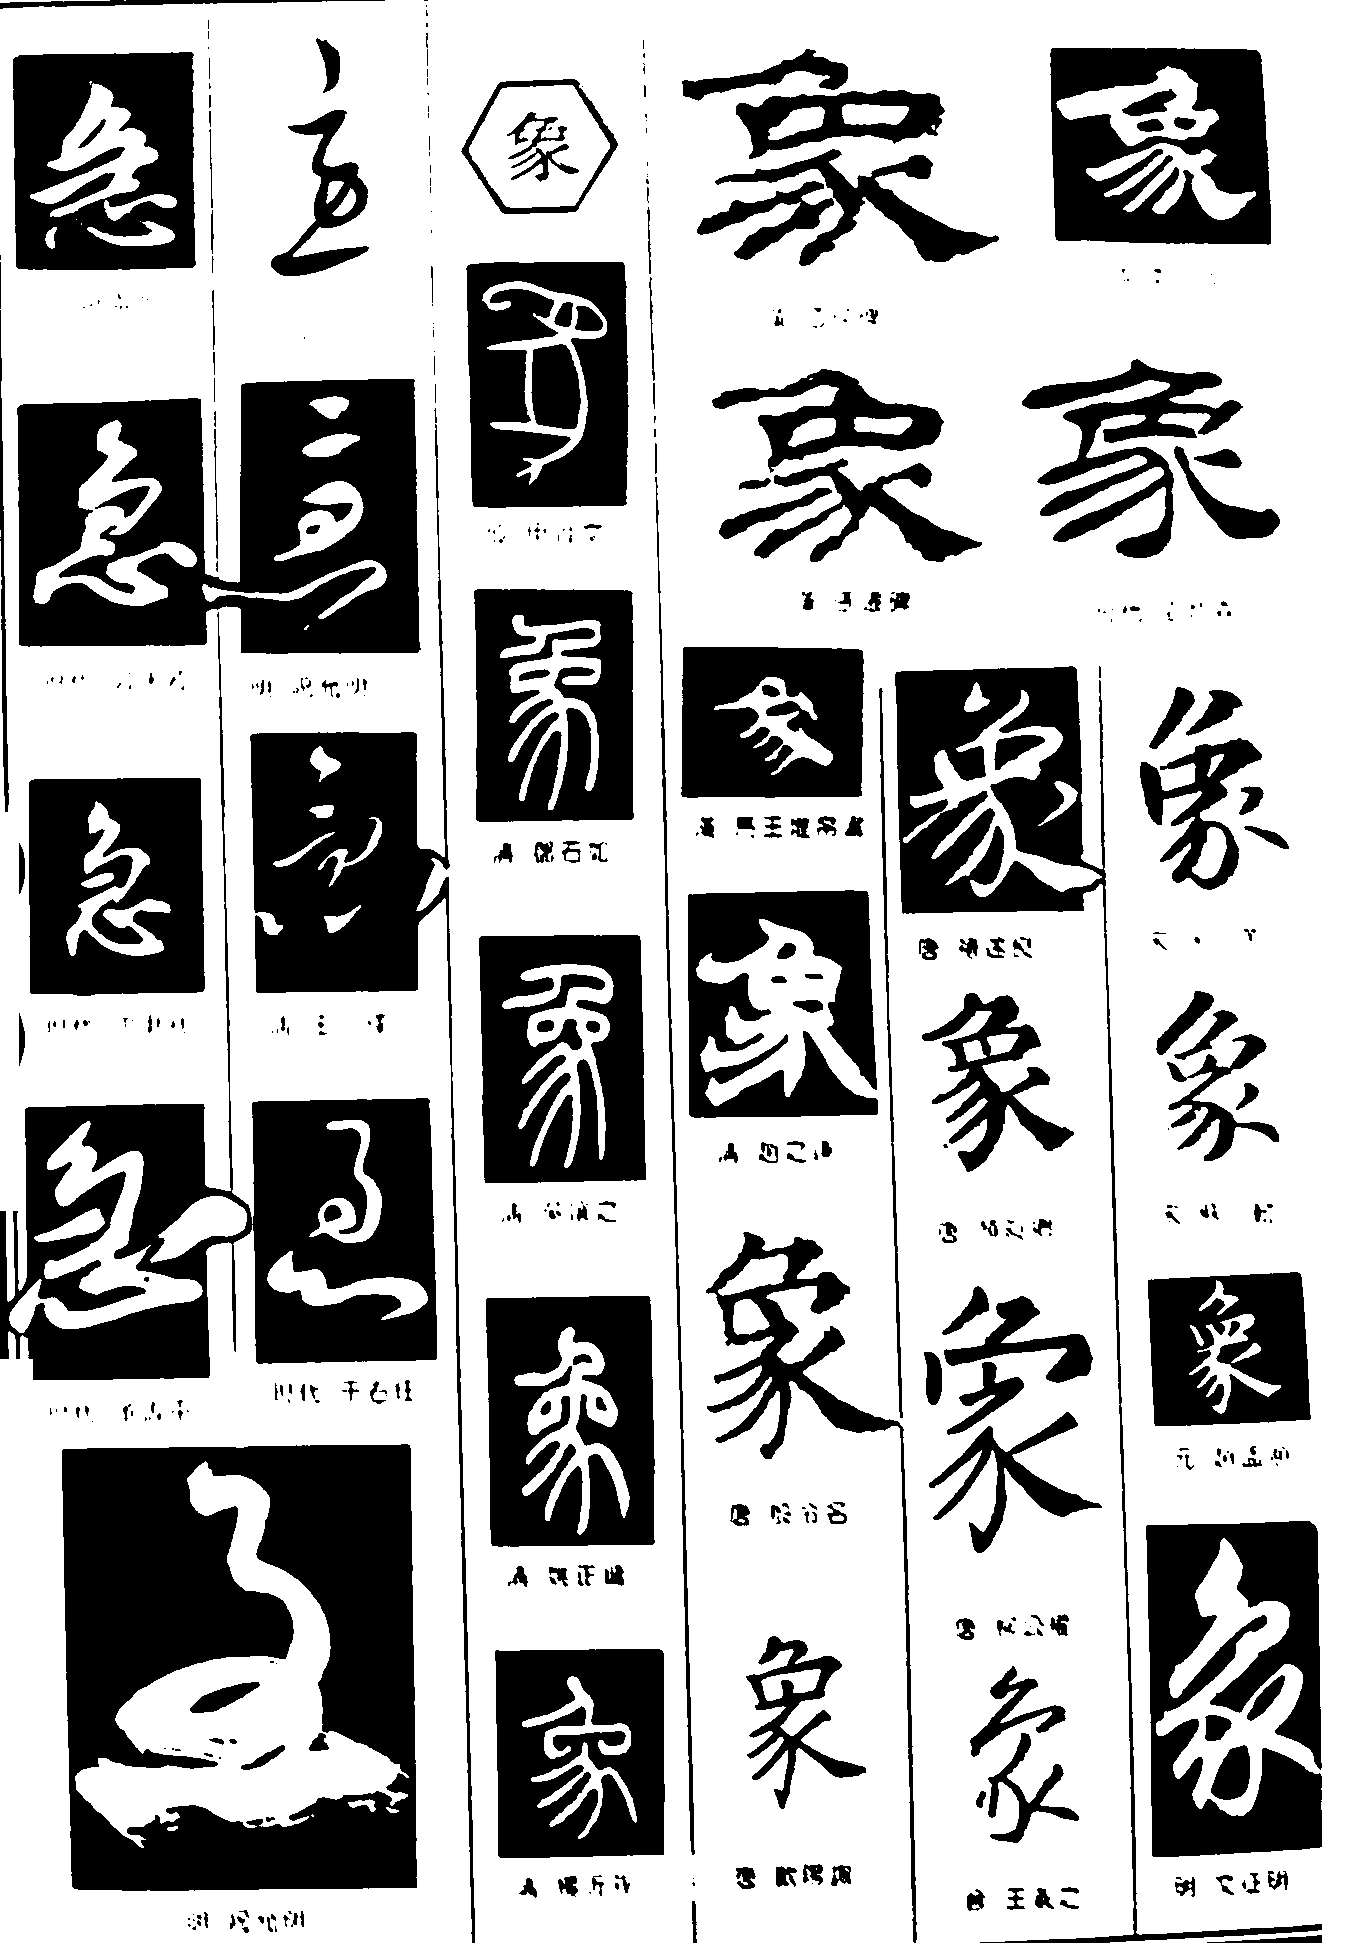 急象 艺术字 毛笔字 书法字 繁体 标志设计